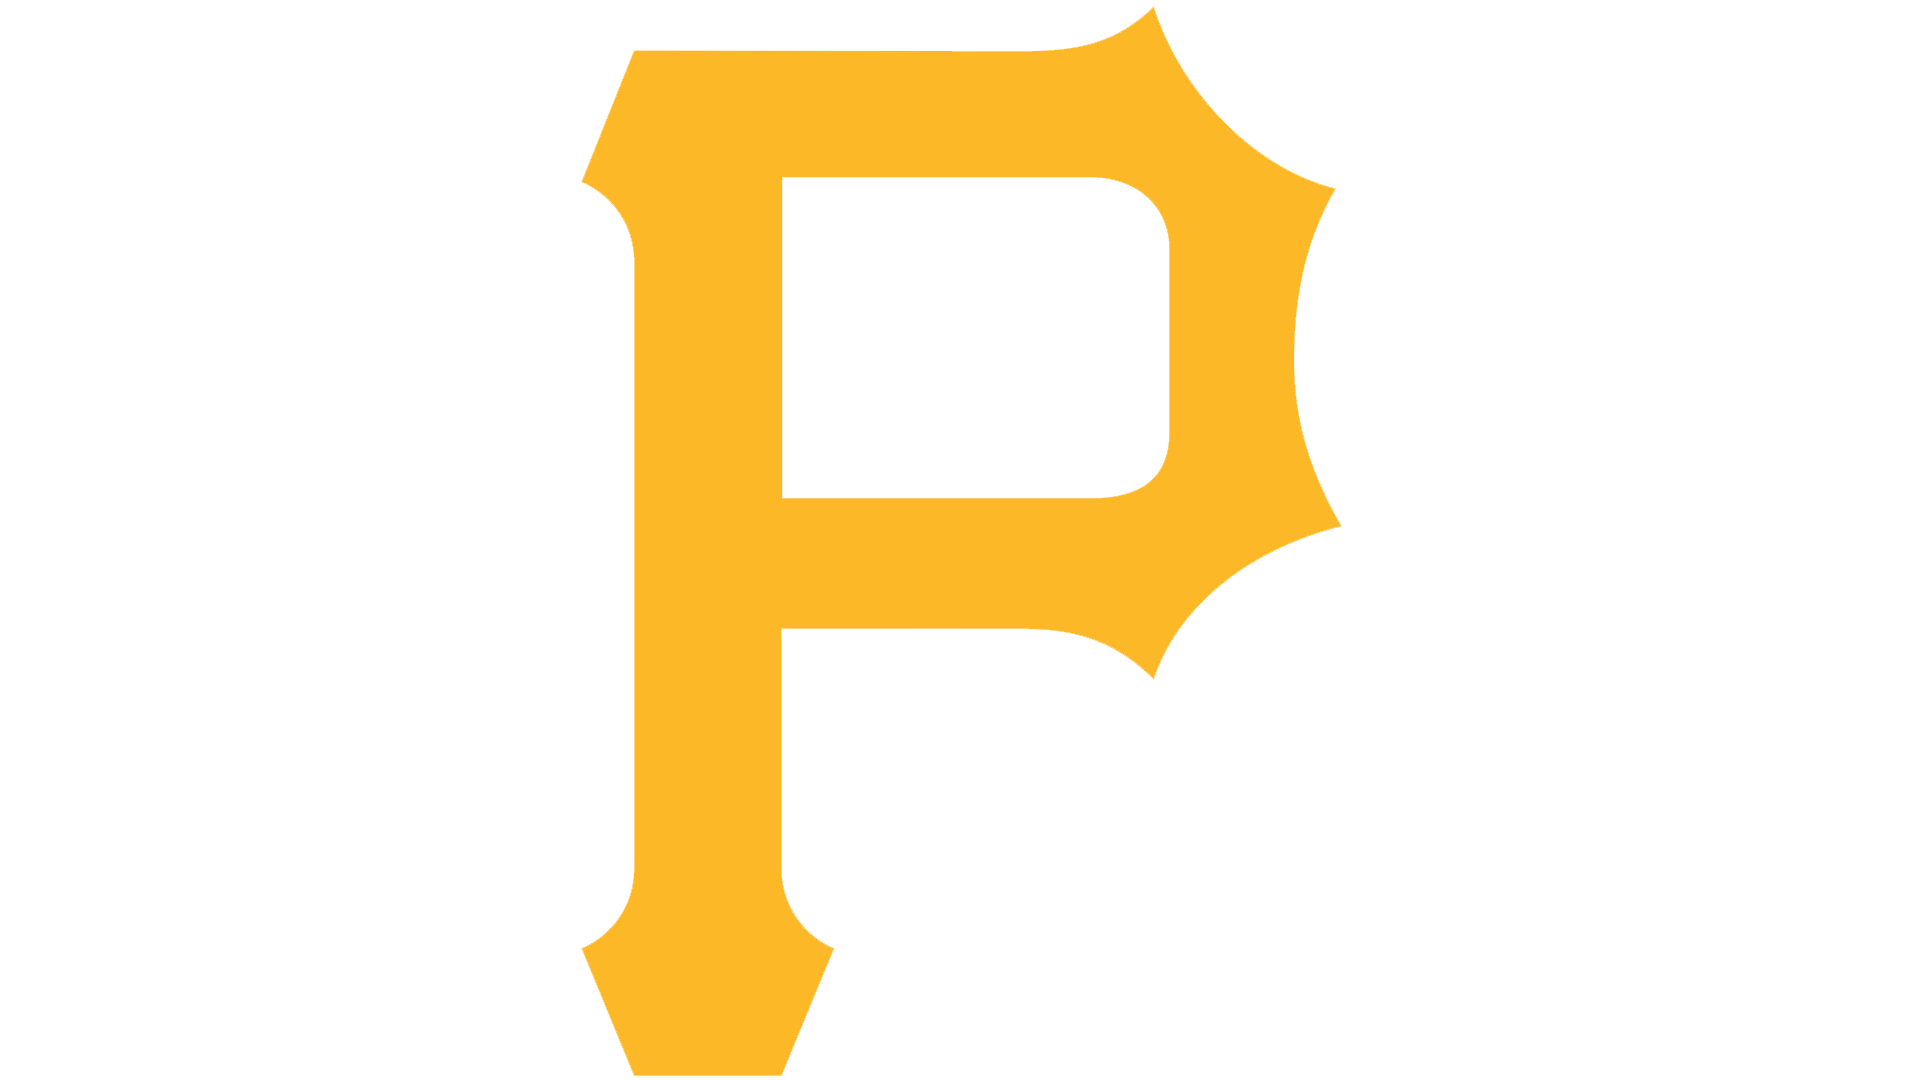 Pittsburgh Pirates P Logo - Pittsburgh Pirates Logo, Pittsburgh Pirates Symbol, Meaning, History